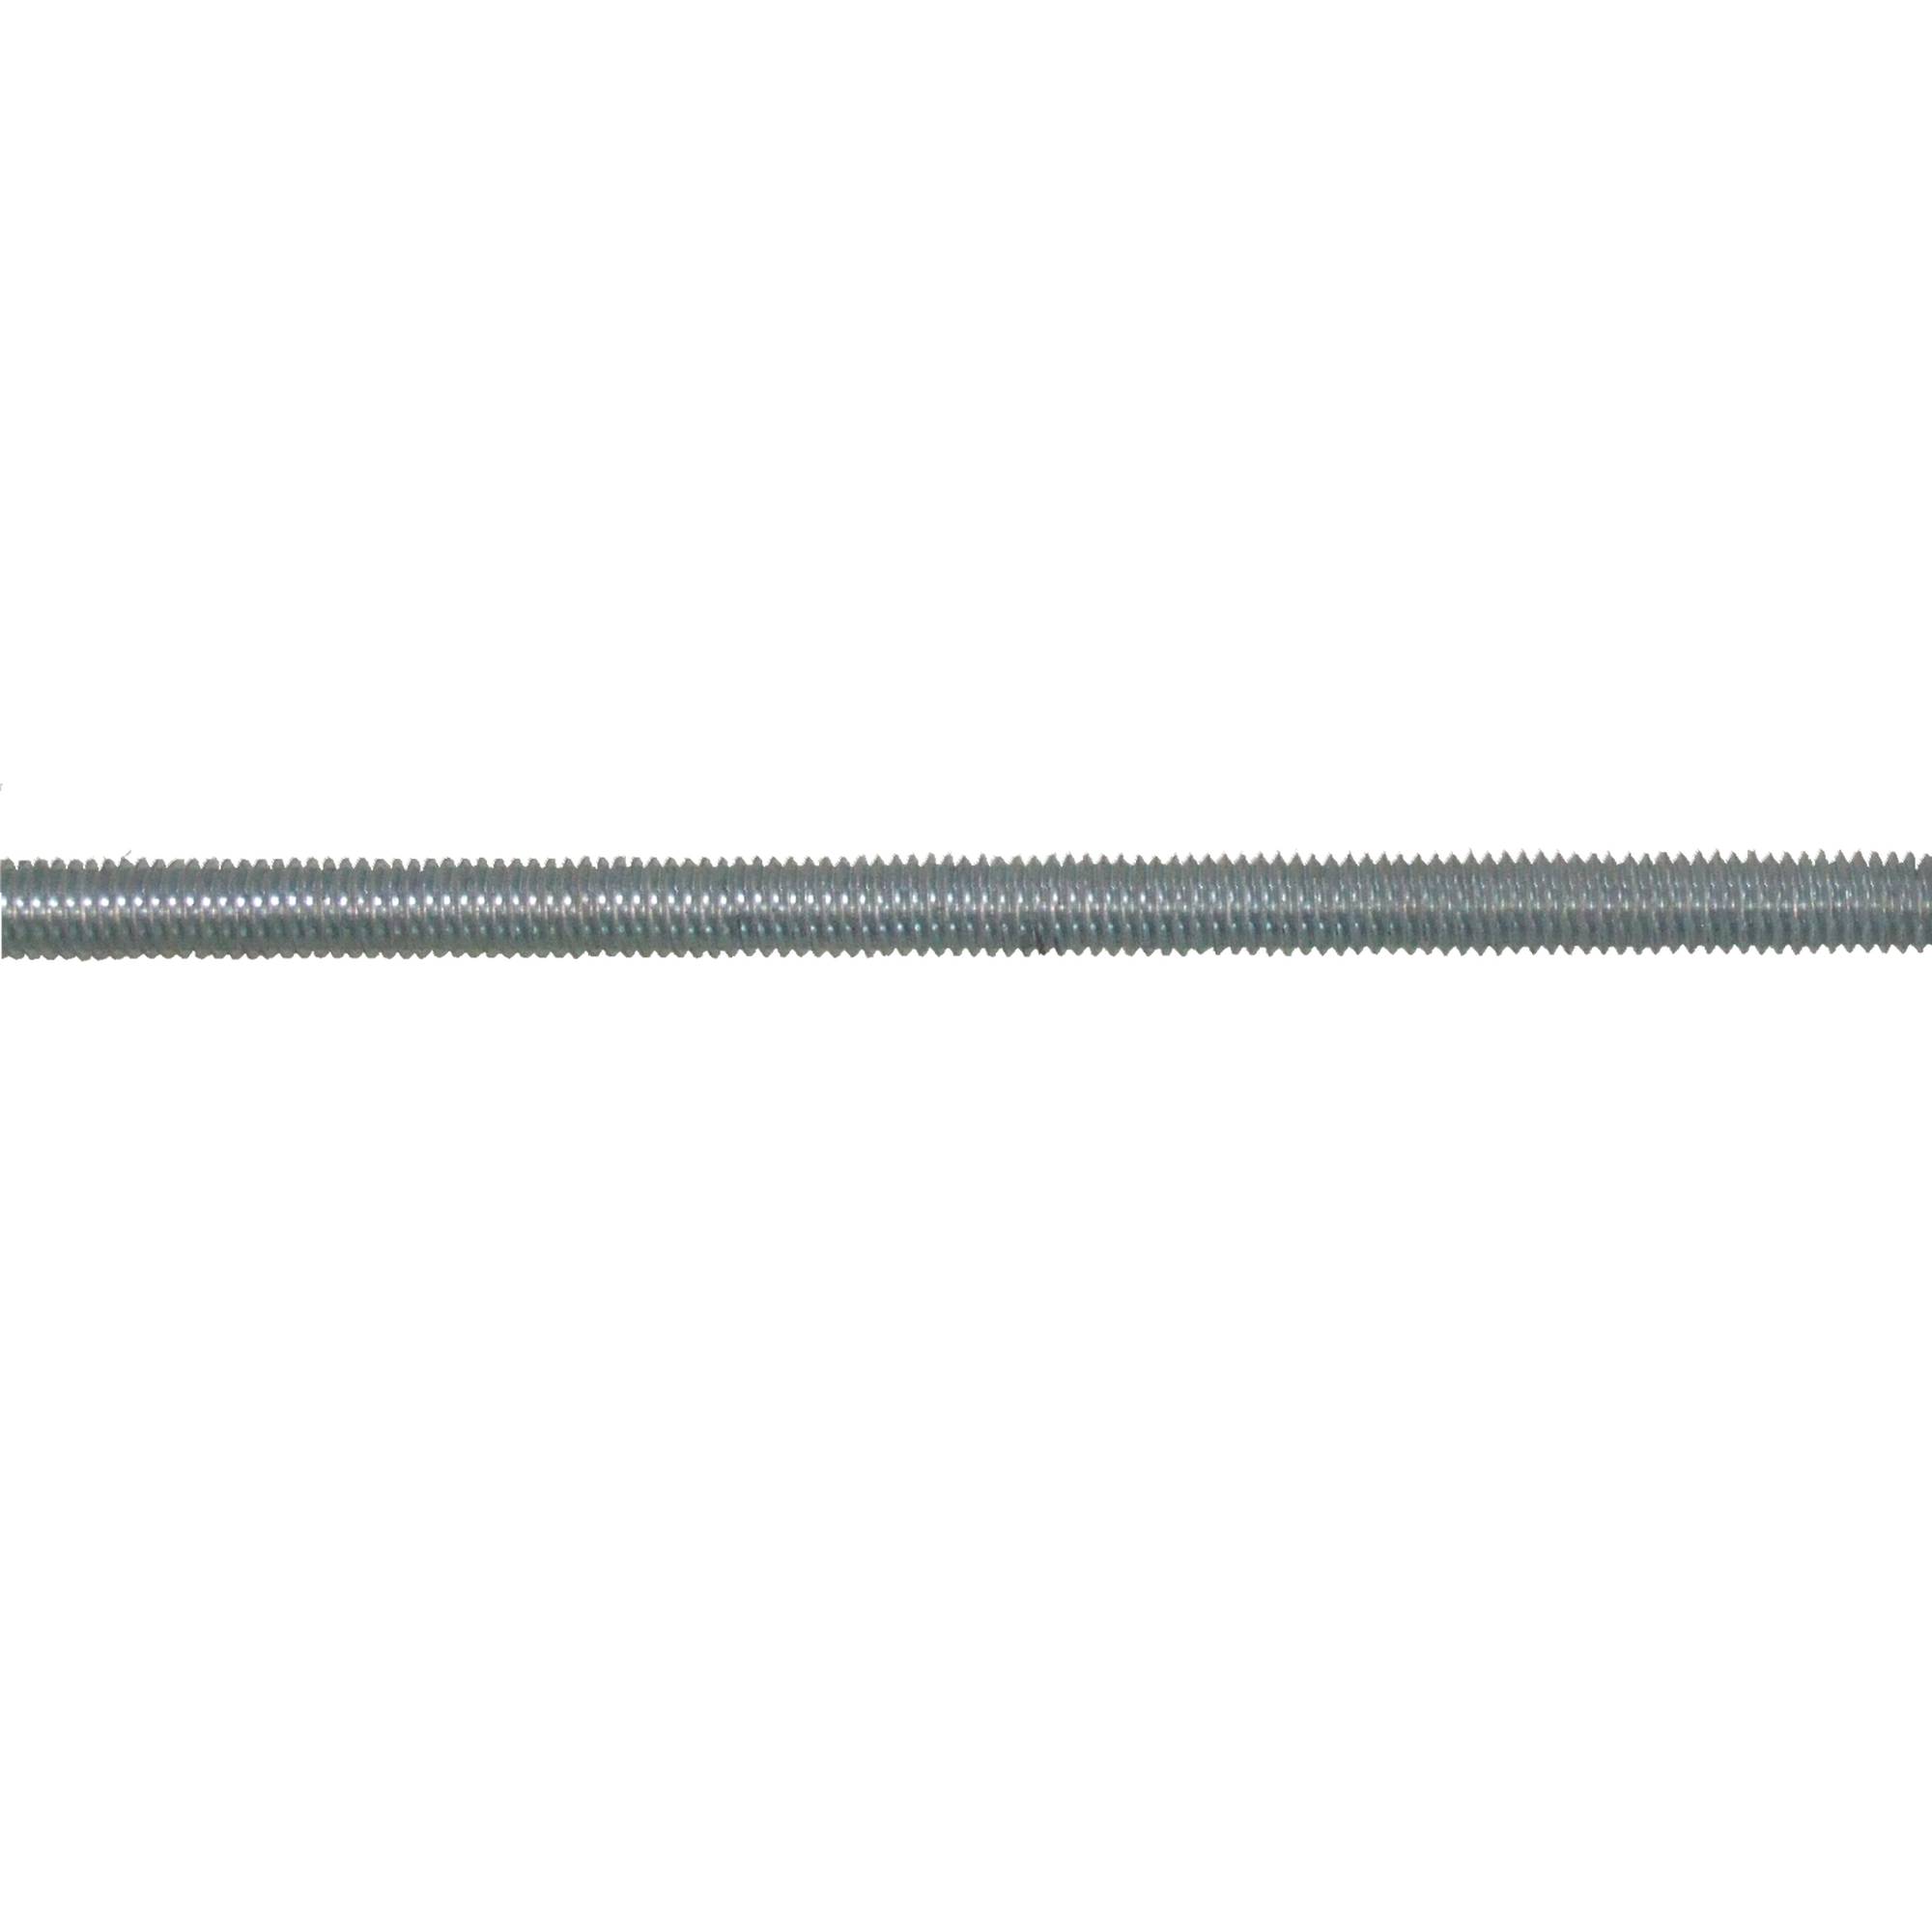 Steel threaded rod 3/8 in, sold by linear foot.